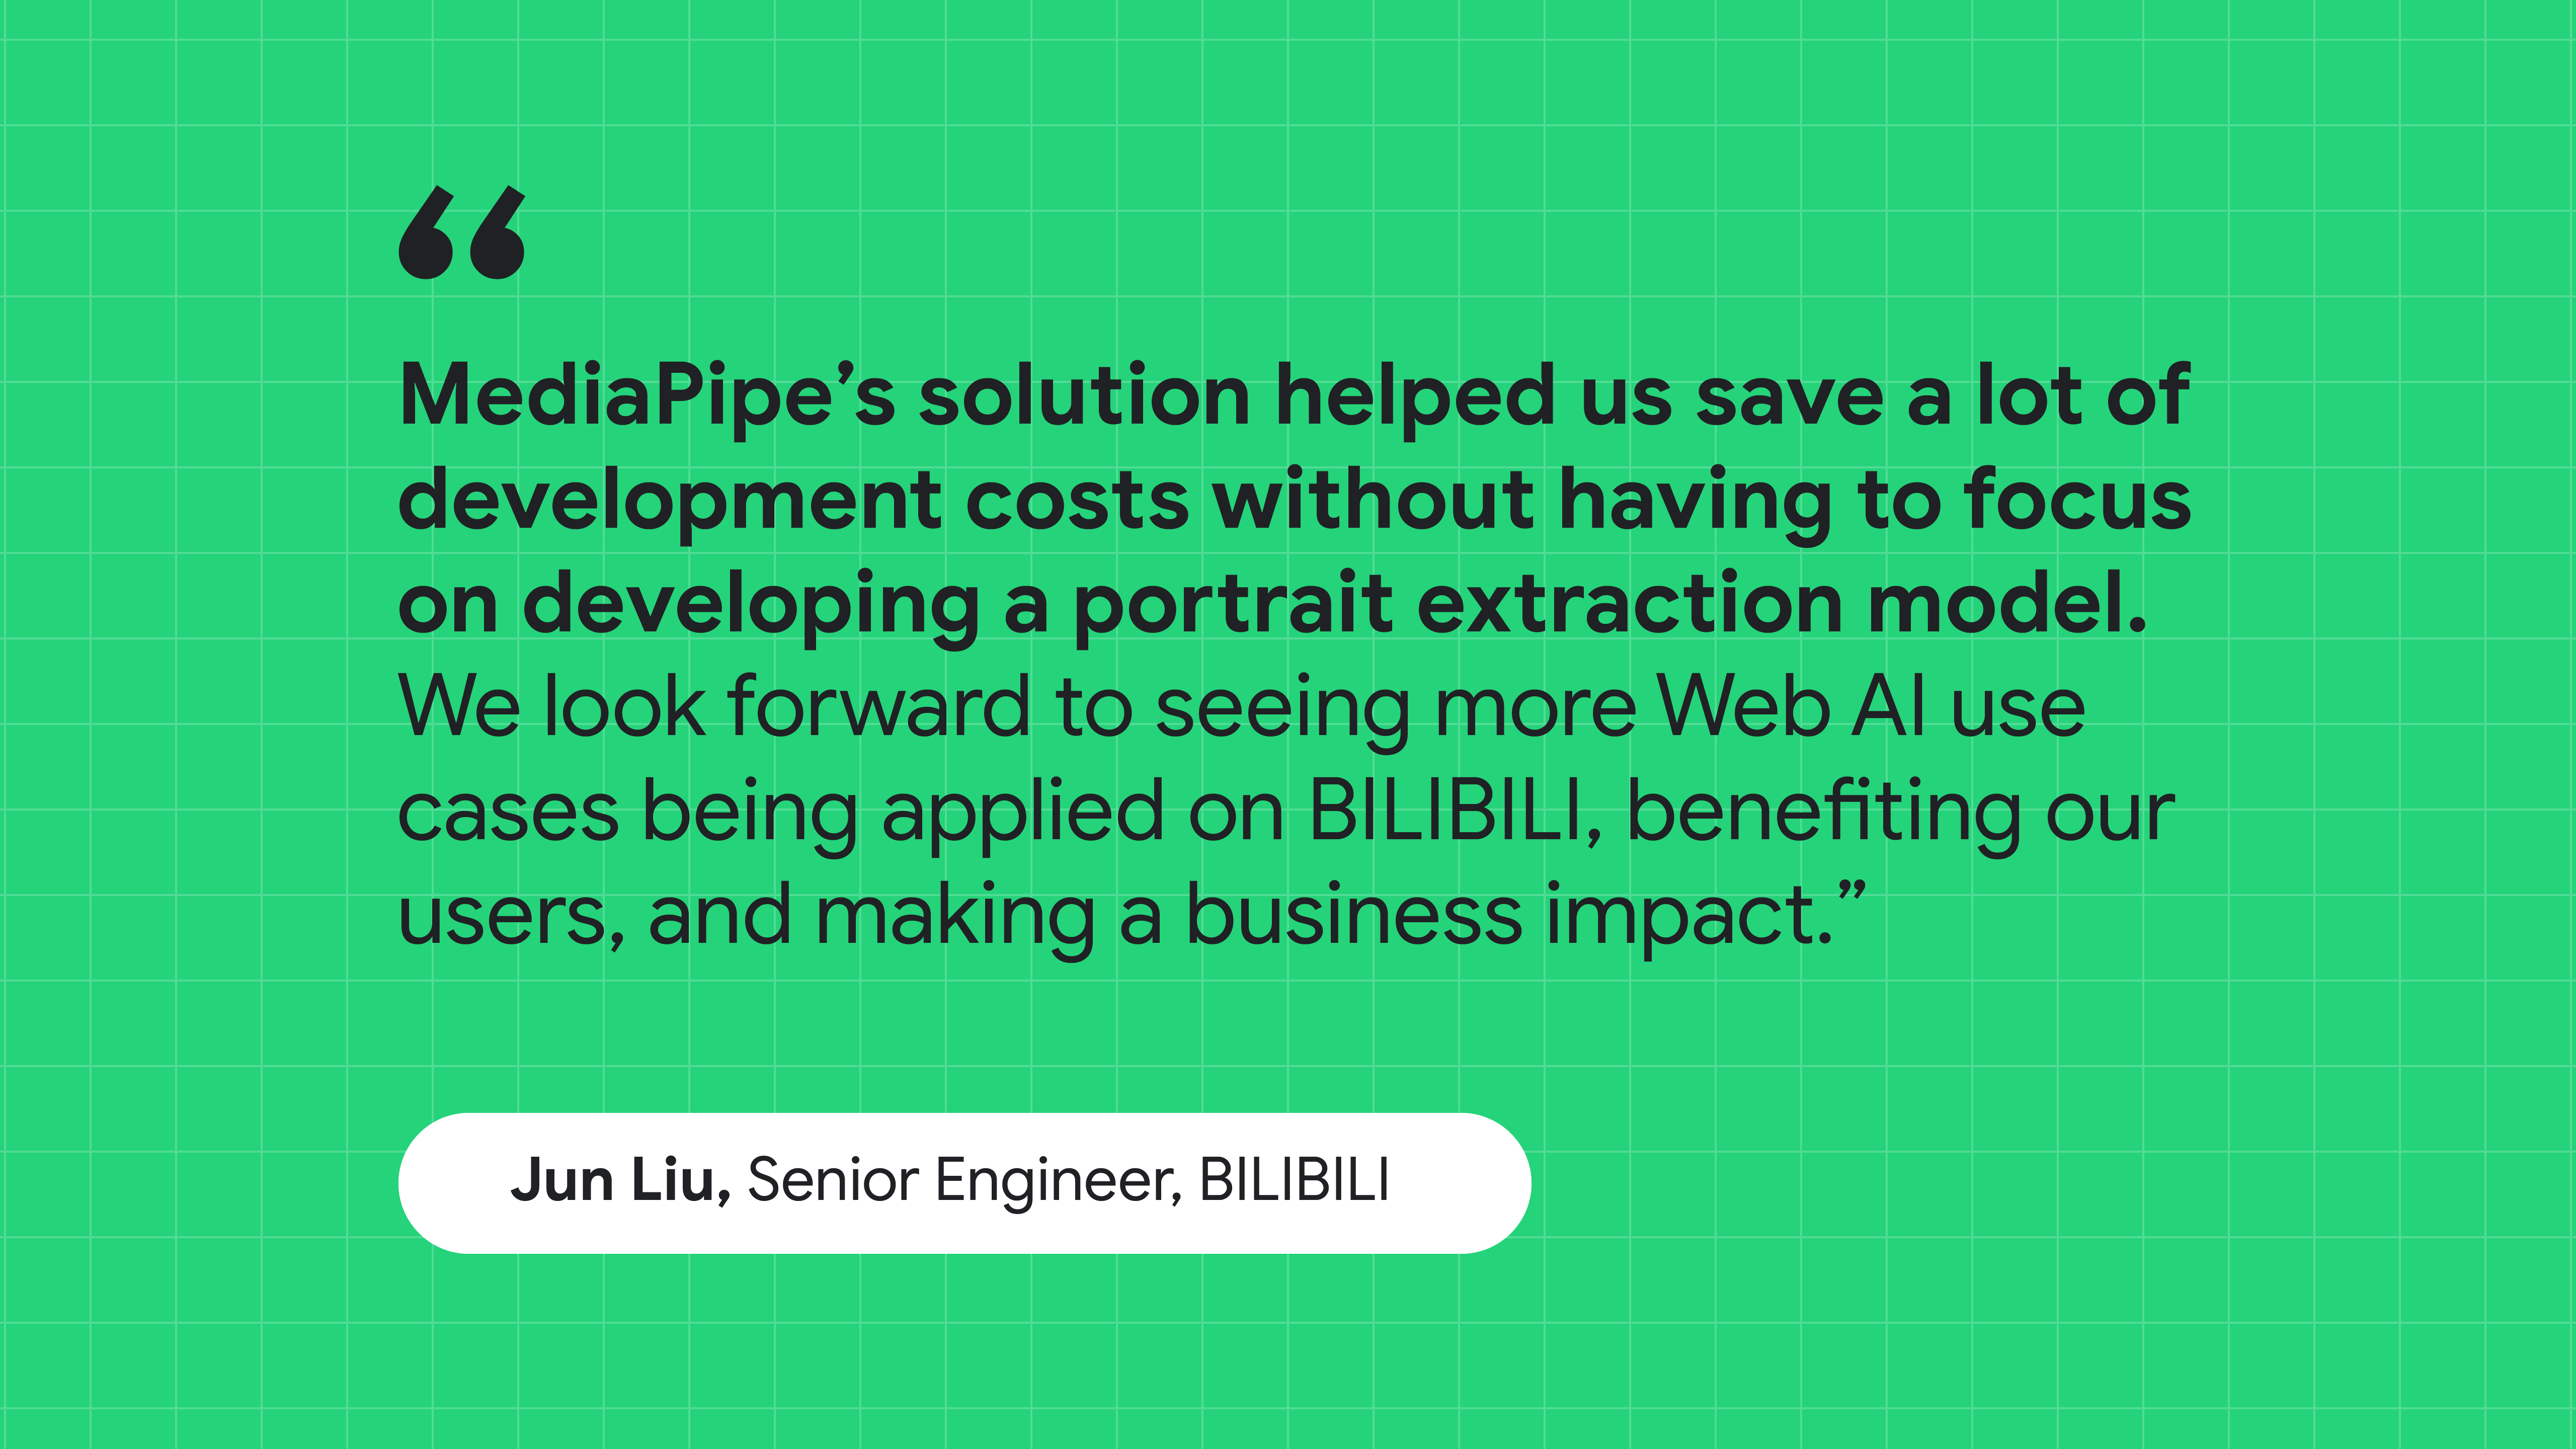 BILIBILI のシニア エンジニアである Jun Liu 氏の言葉: MediaPipe のソリューションは、ポートレート抽出モデルの作成に注力することなく、開発費用を削減できました。